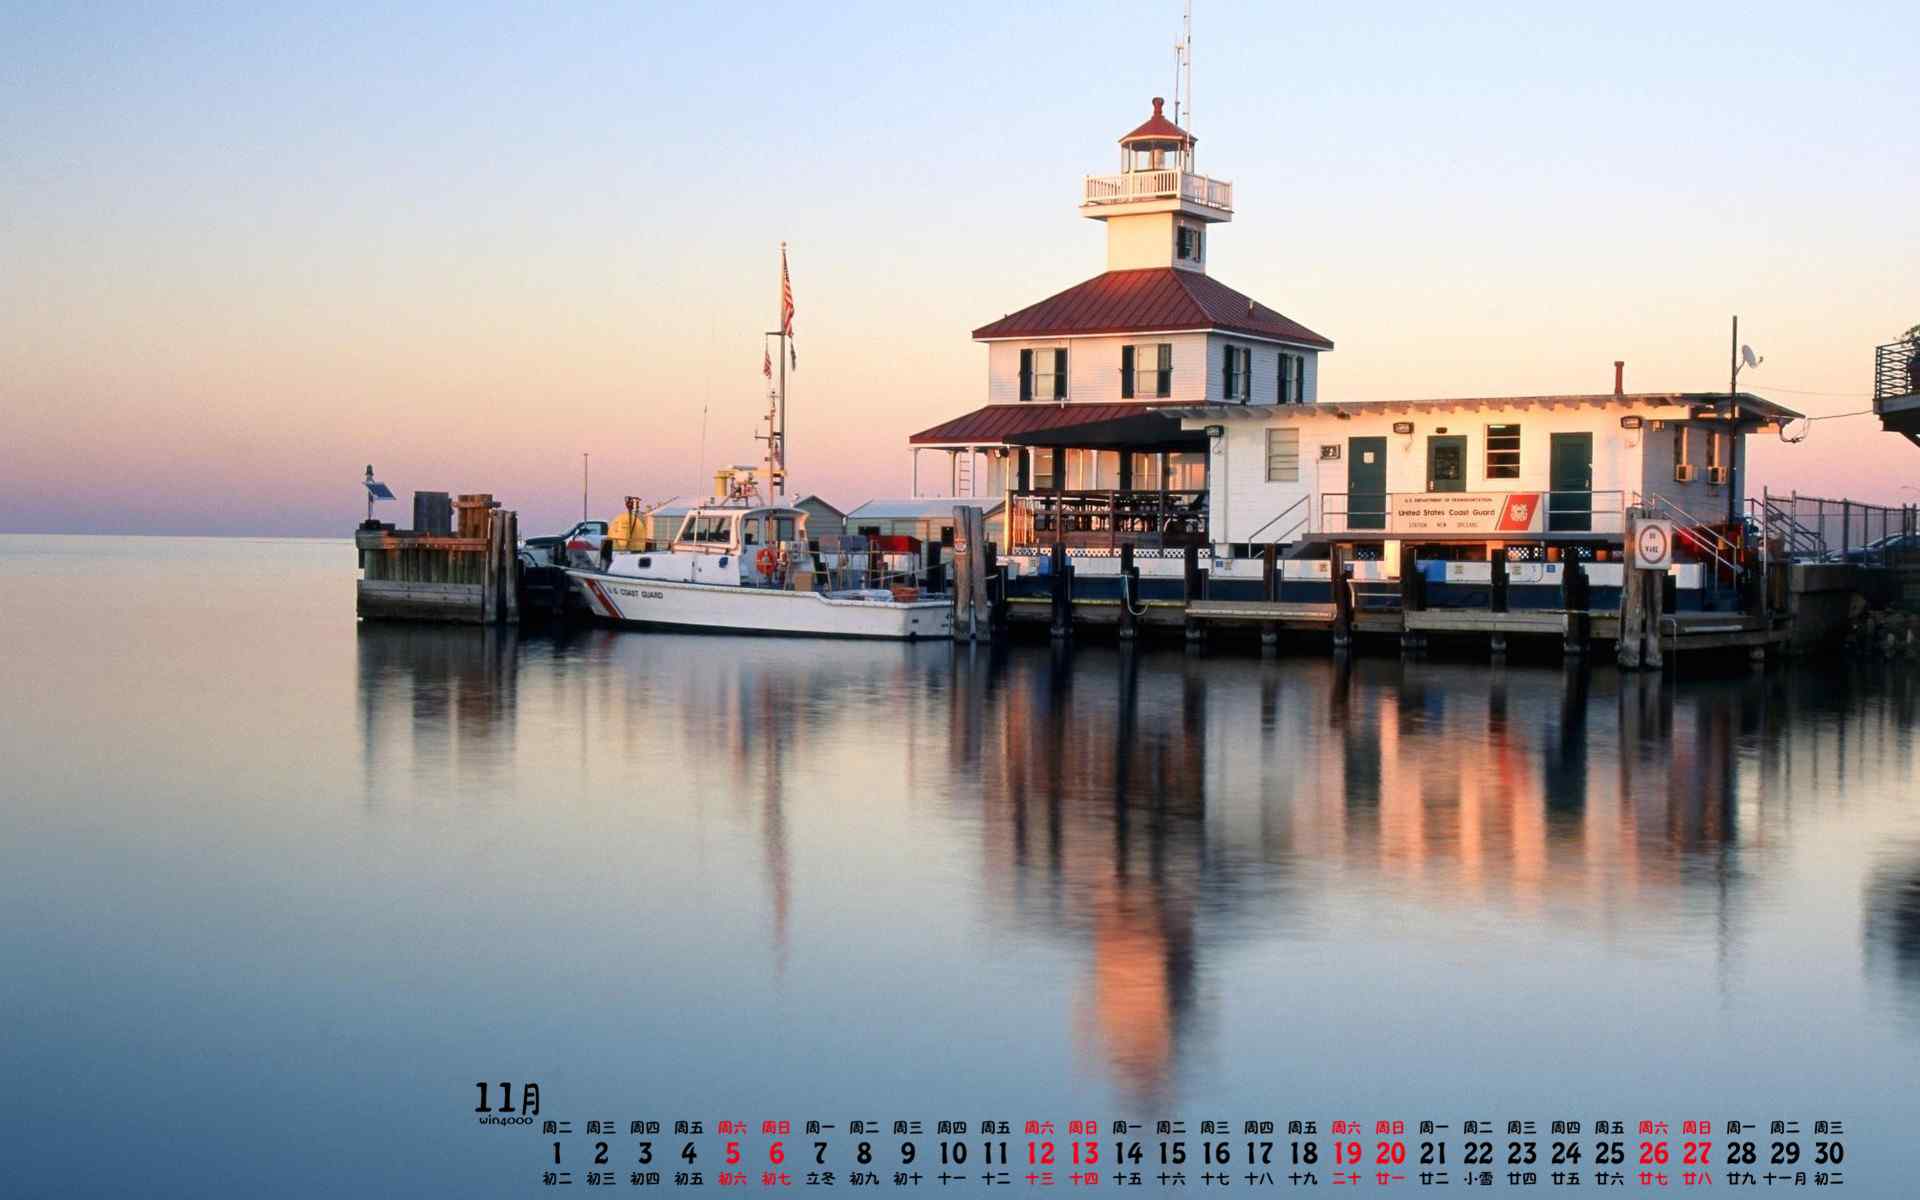 2016年11月日历海边灯塔高清摄影图片桌面壁纸